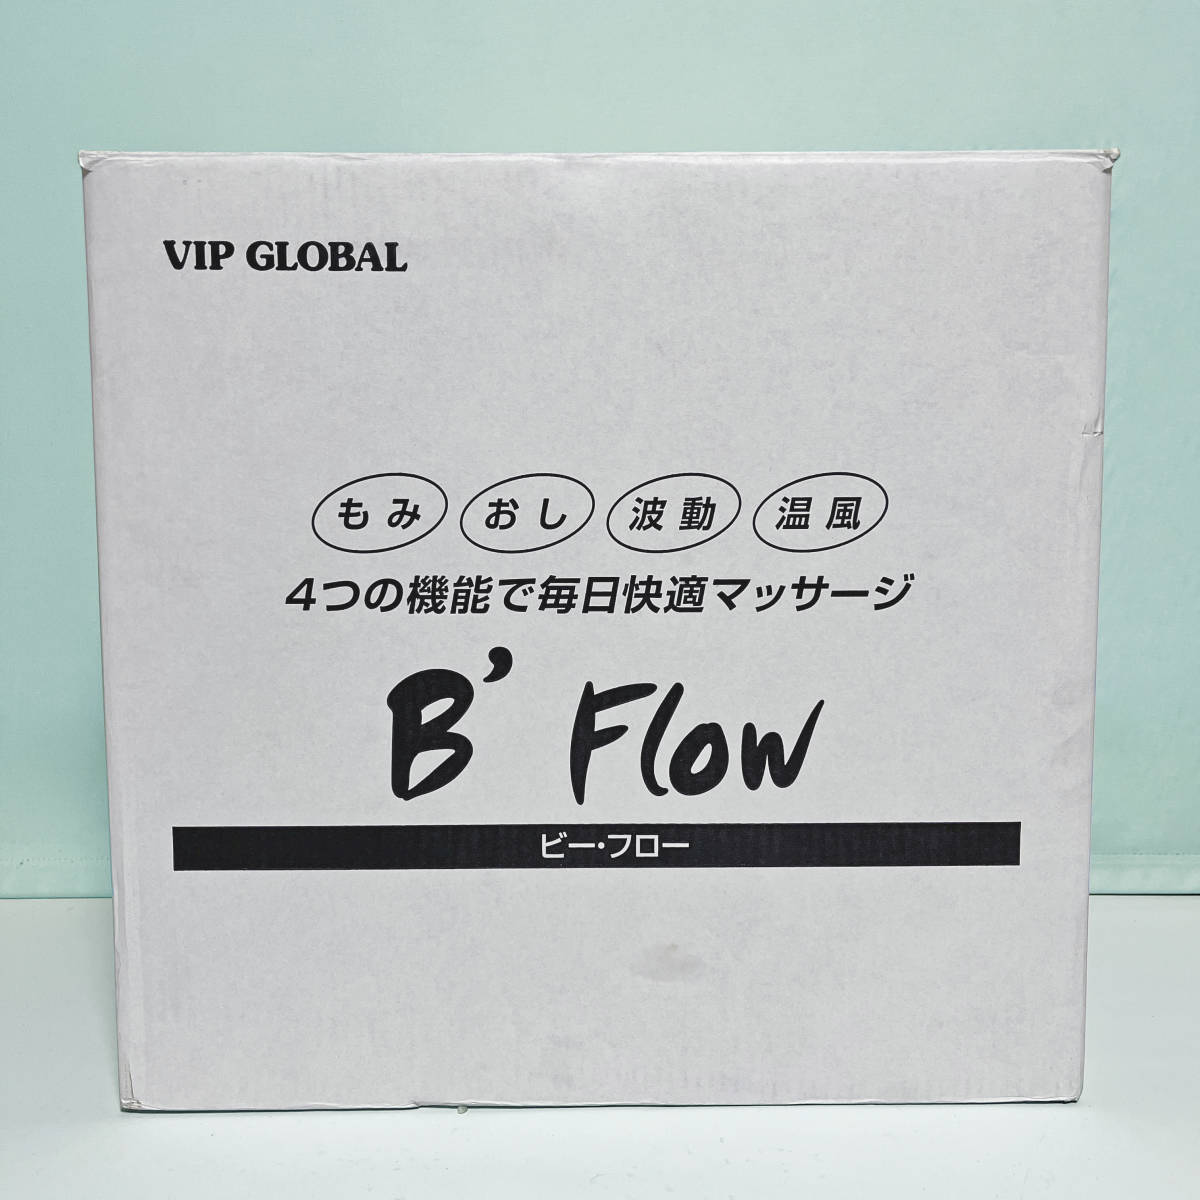 未使用品 B'Flow ビー・フロー フットマッサージャー MD-5310 VIPグローバル_画像4